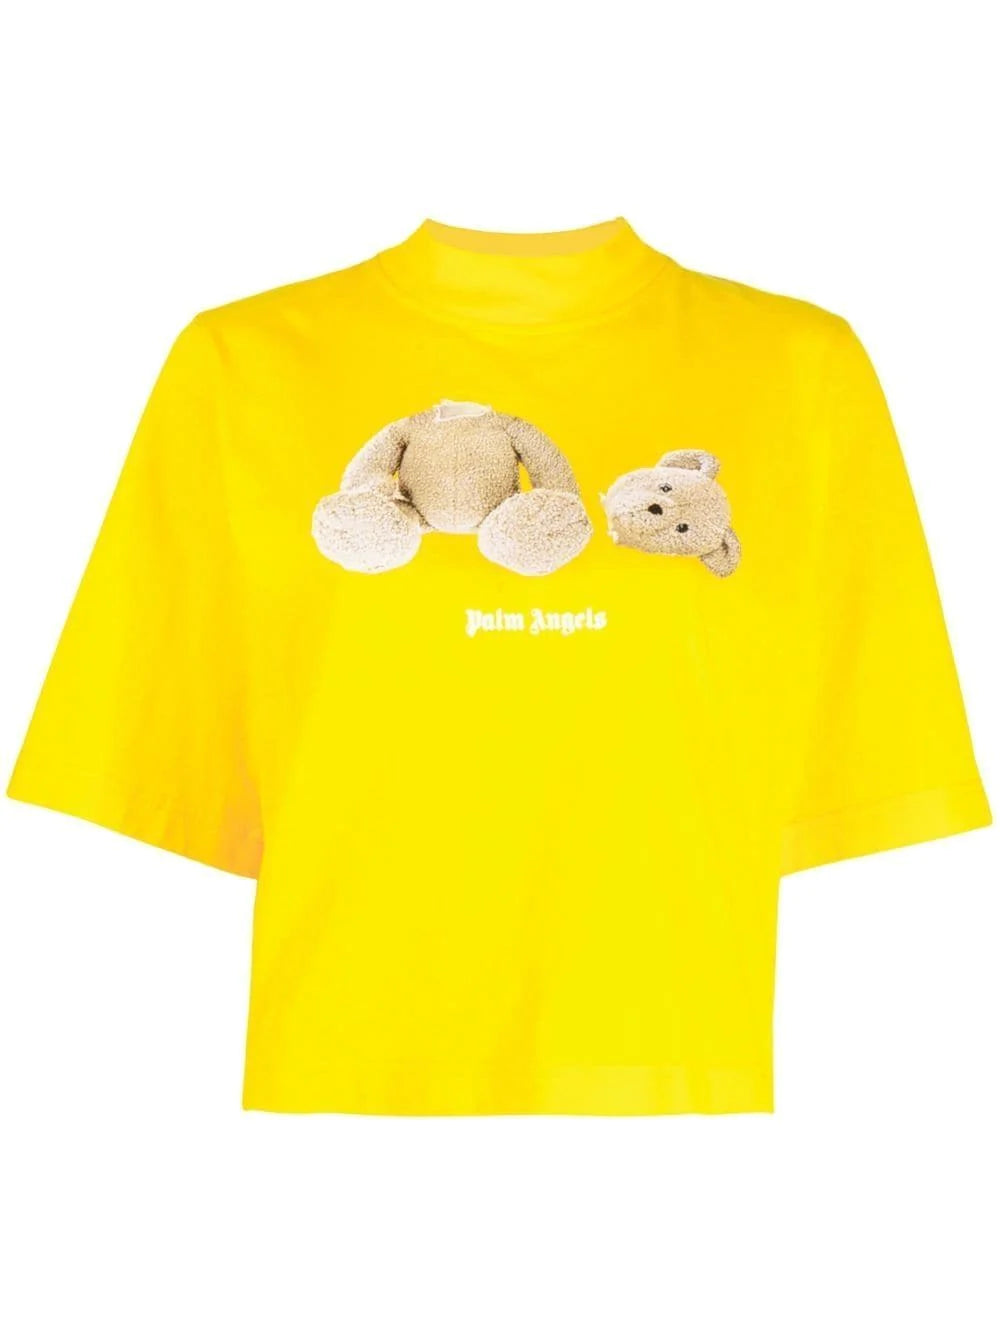 Palm Angels Yellow Crop Top Bear T-shirt